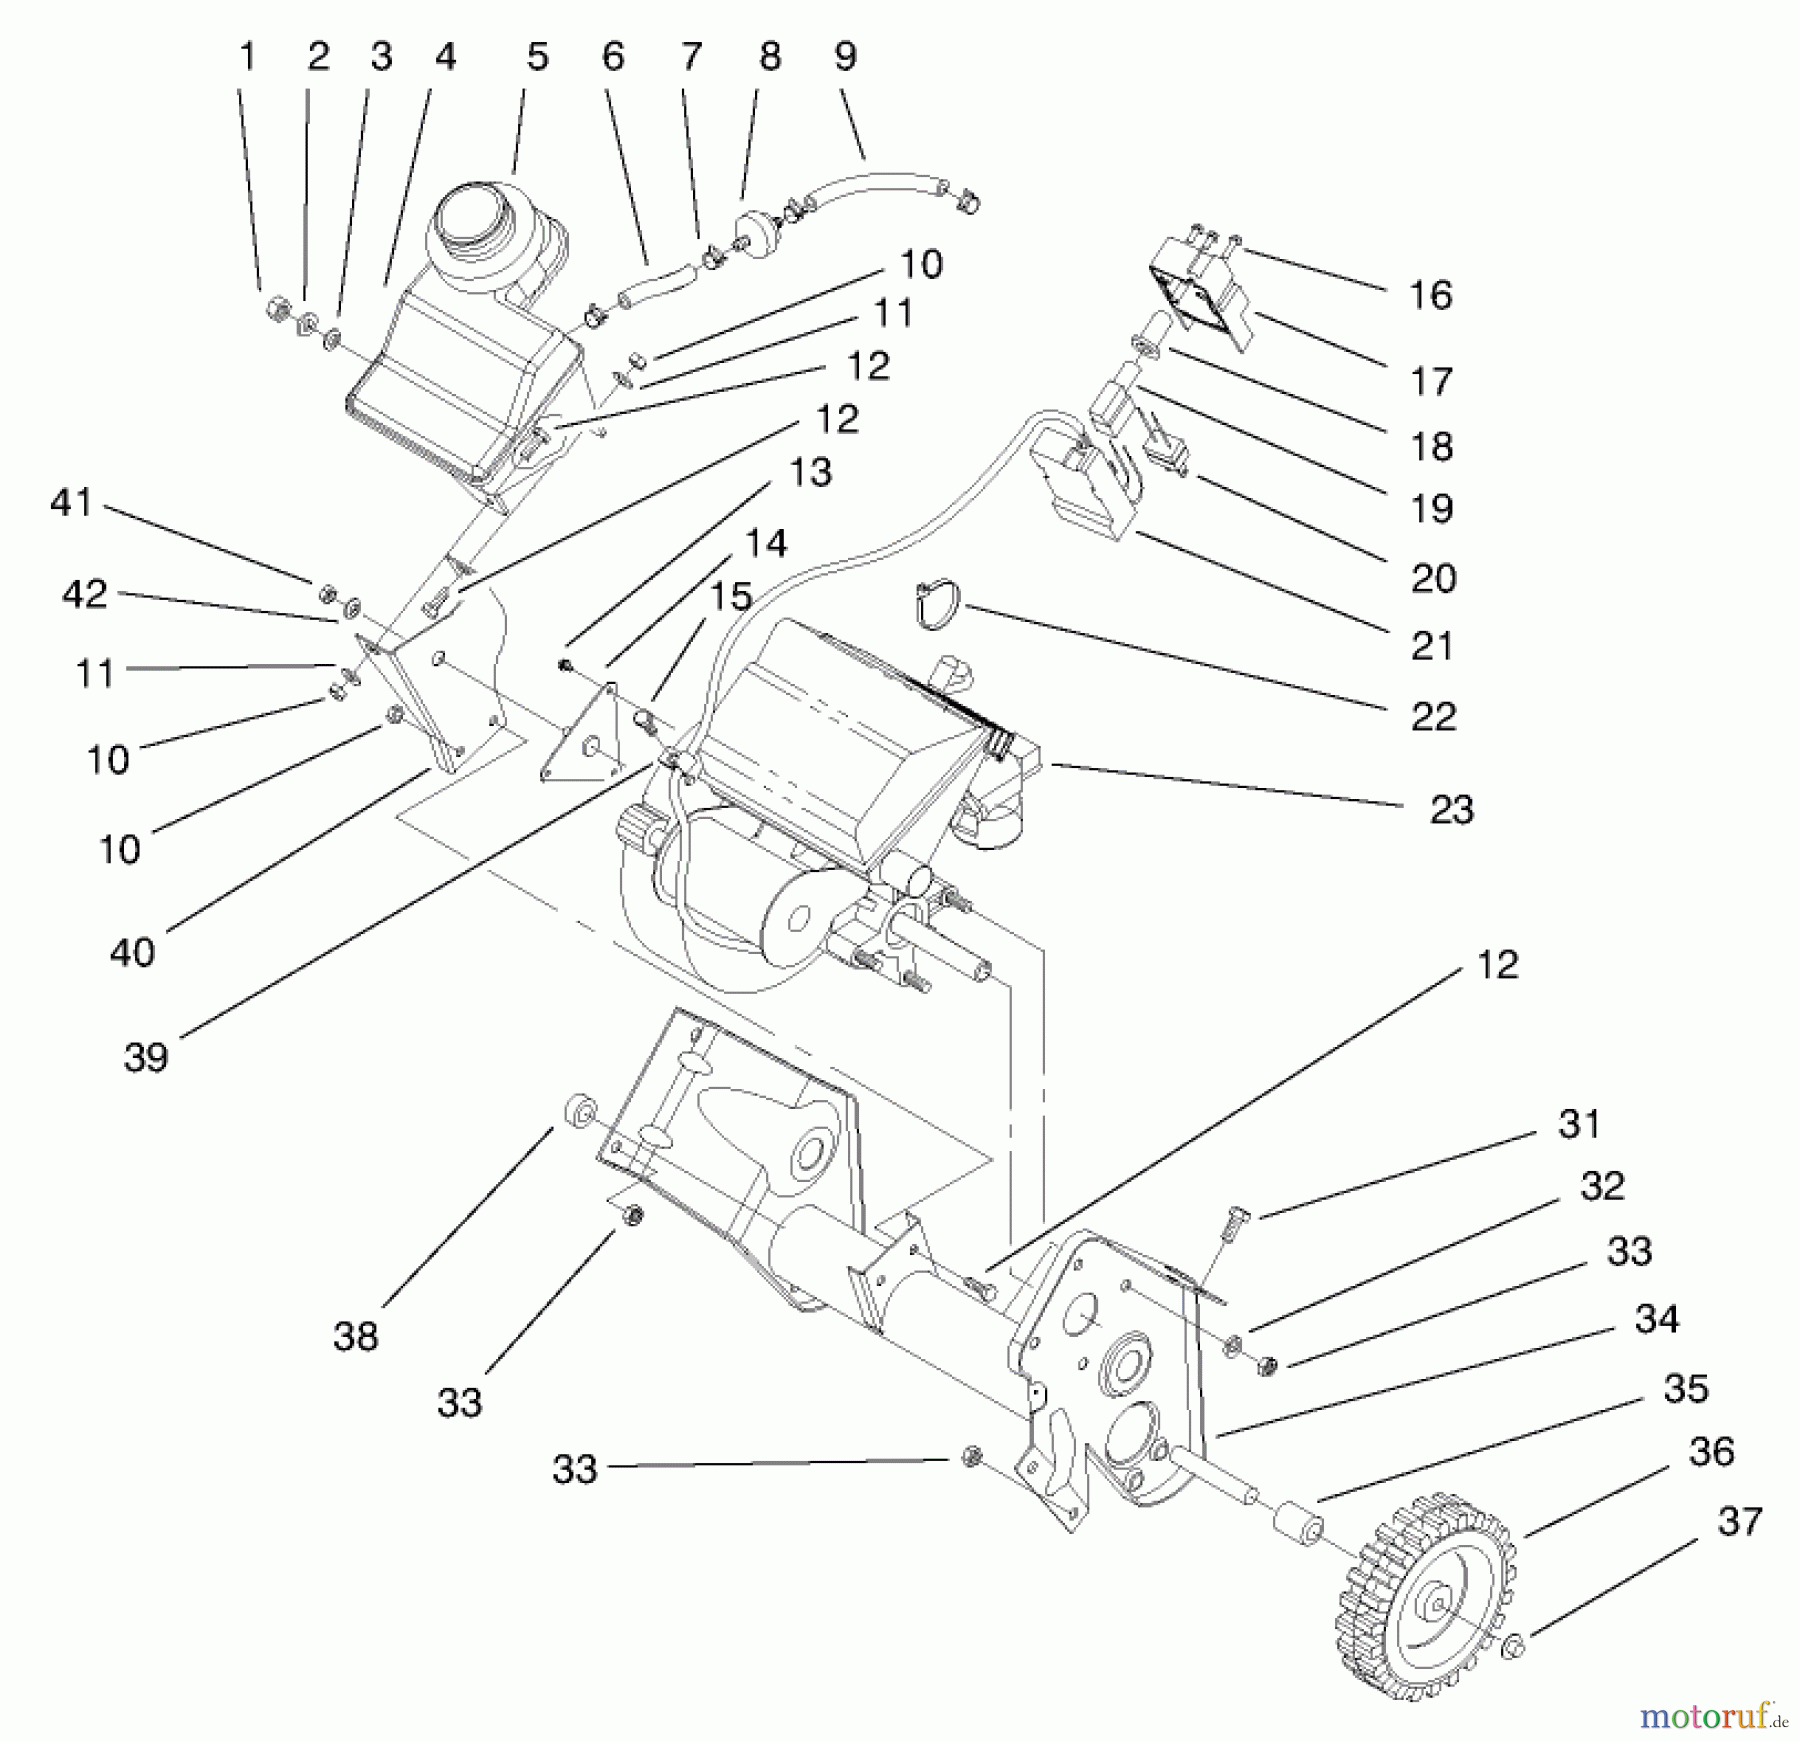  Toro Neu Snow Blowers/Snow Throwers Seite 1 38415 (2400) - Toro CCR 2400 Snowthrower, 1997 (7900001-7999999) ENGINE & FUEL TANK ASSEMBLY